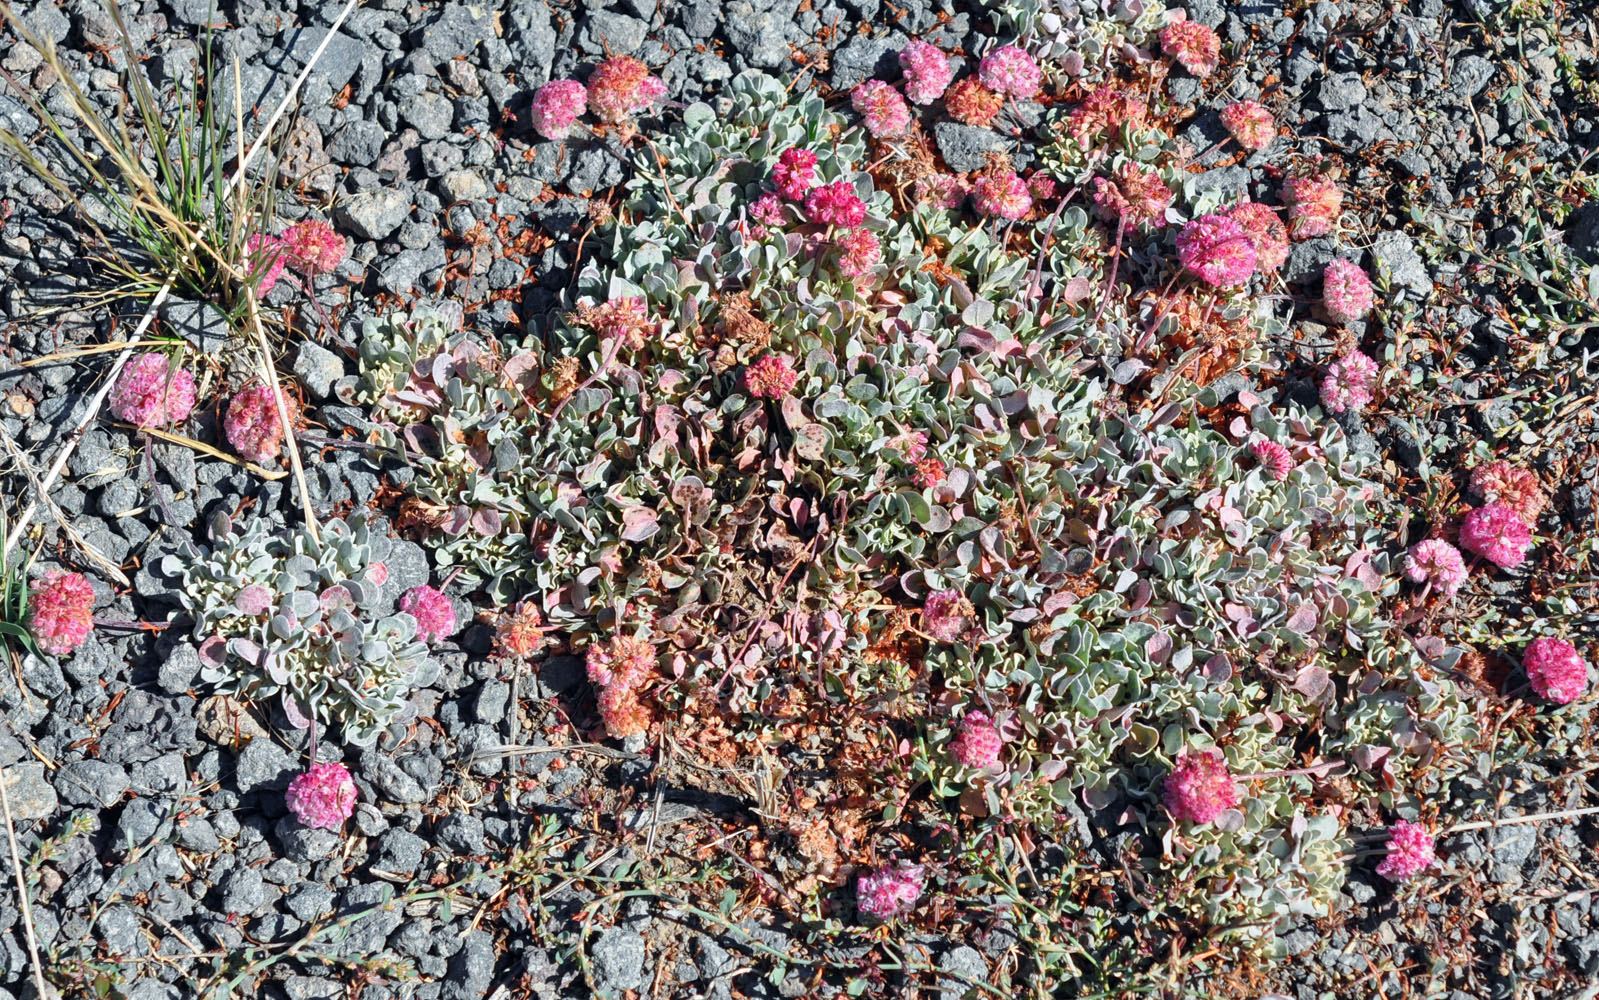 Flora of Eastern Washington Image: Eriogonum ovalifolium